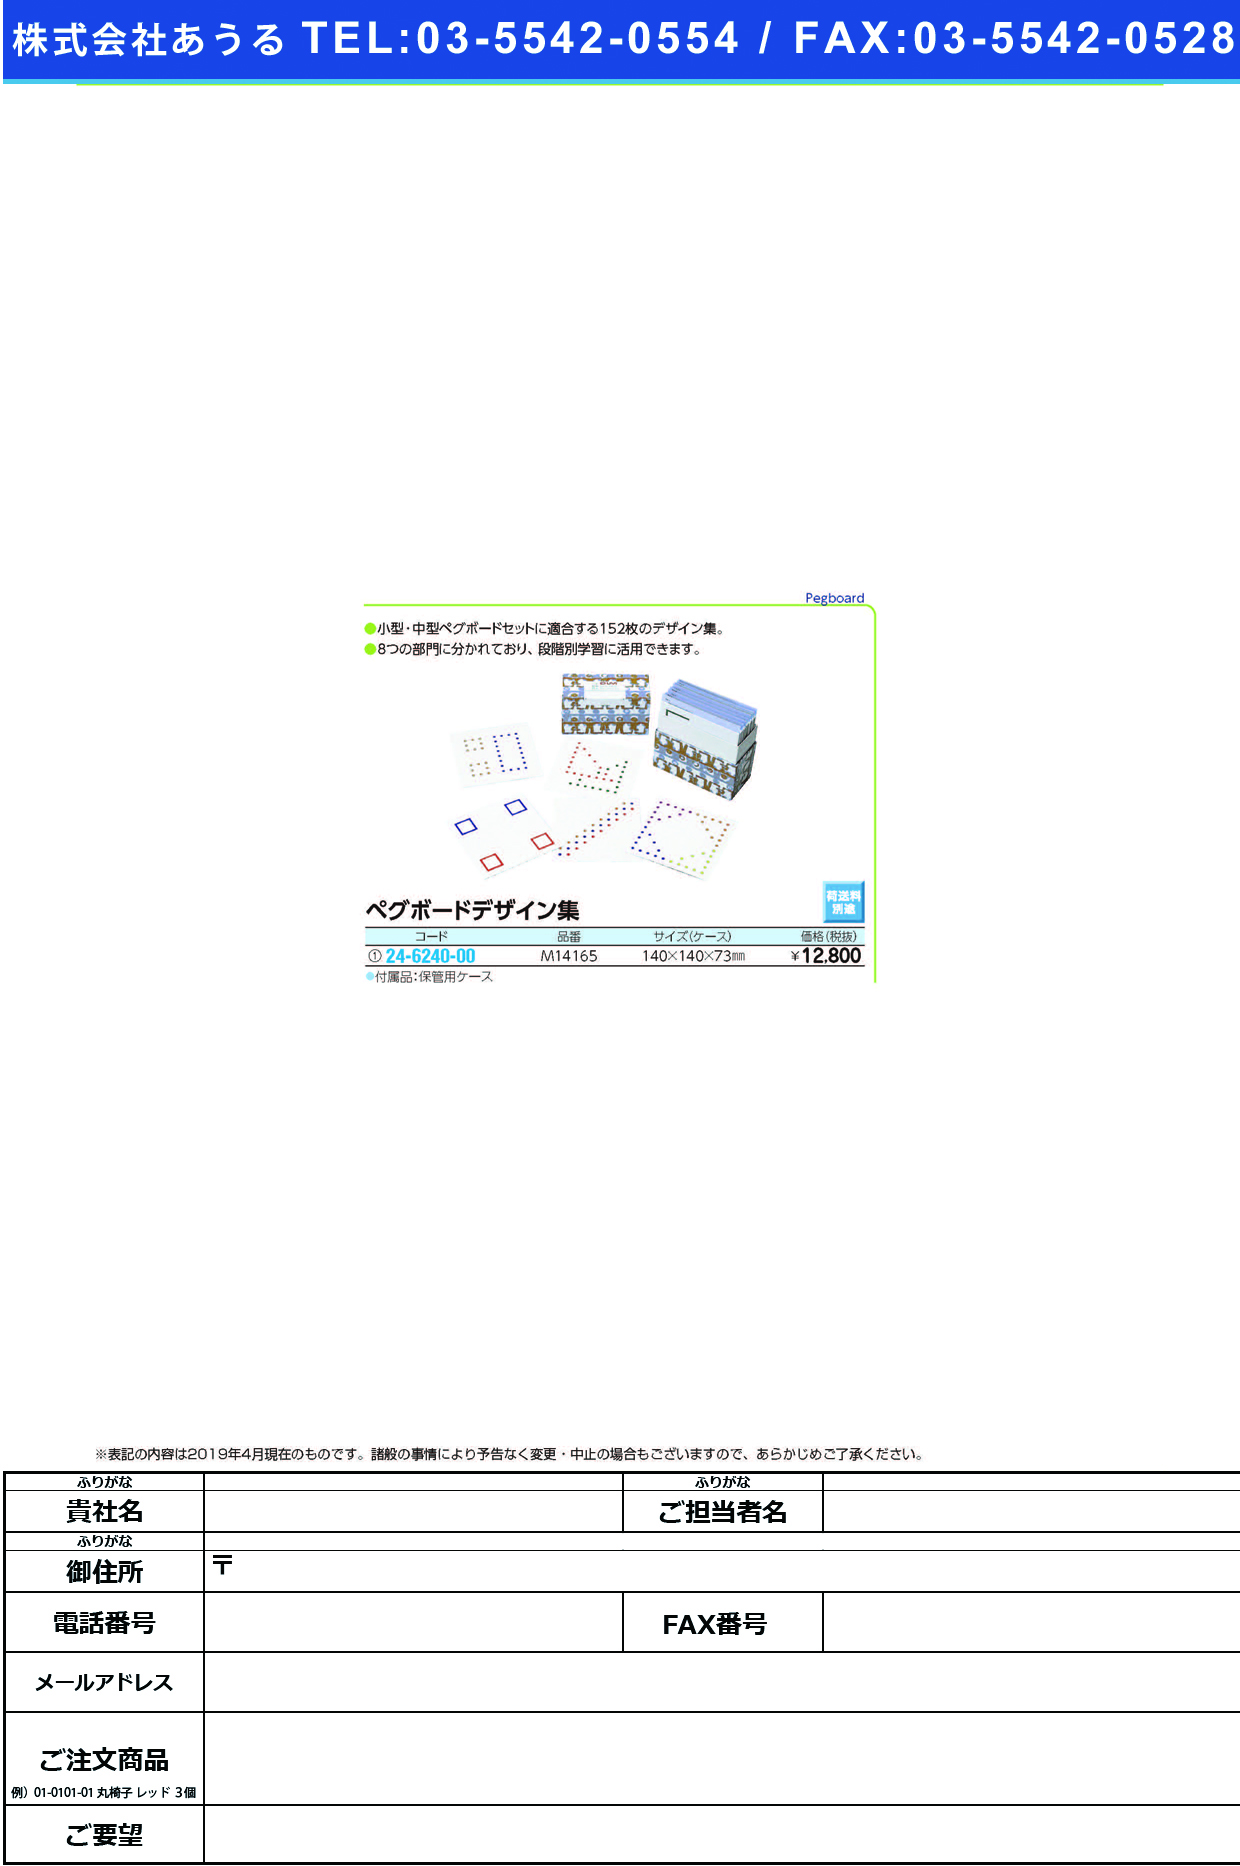 (24-6240-00)ペグボードデザイン集 M14165(152ﾏｲ･ﾊｺﾂｷ) ﾍﾟｸﾞﾎﾞｰﾄﾞﾃﾞｻﾞｲﾝｼｭｳ【1個単位】【2019年カタログ商品】